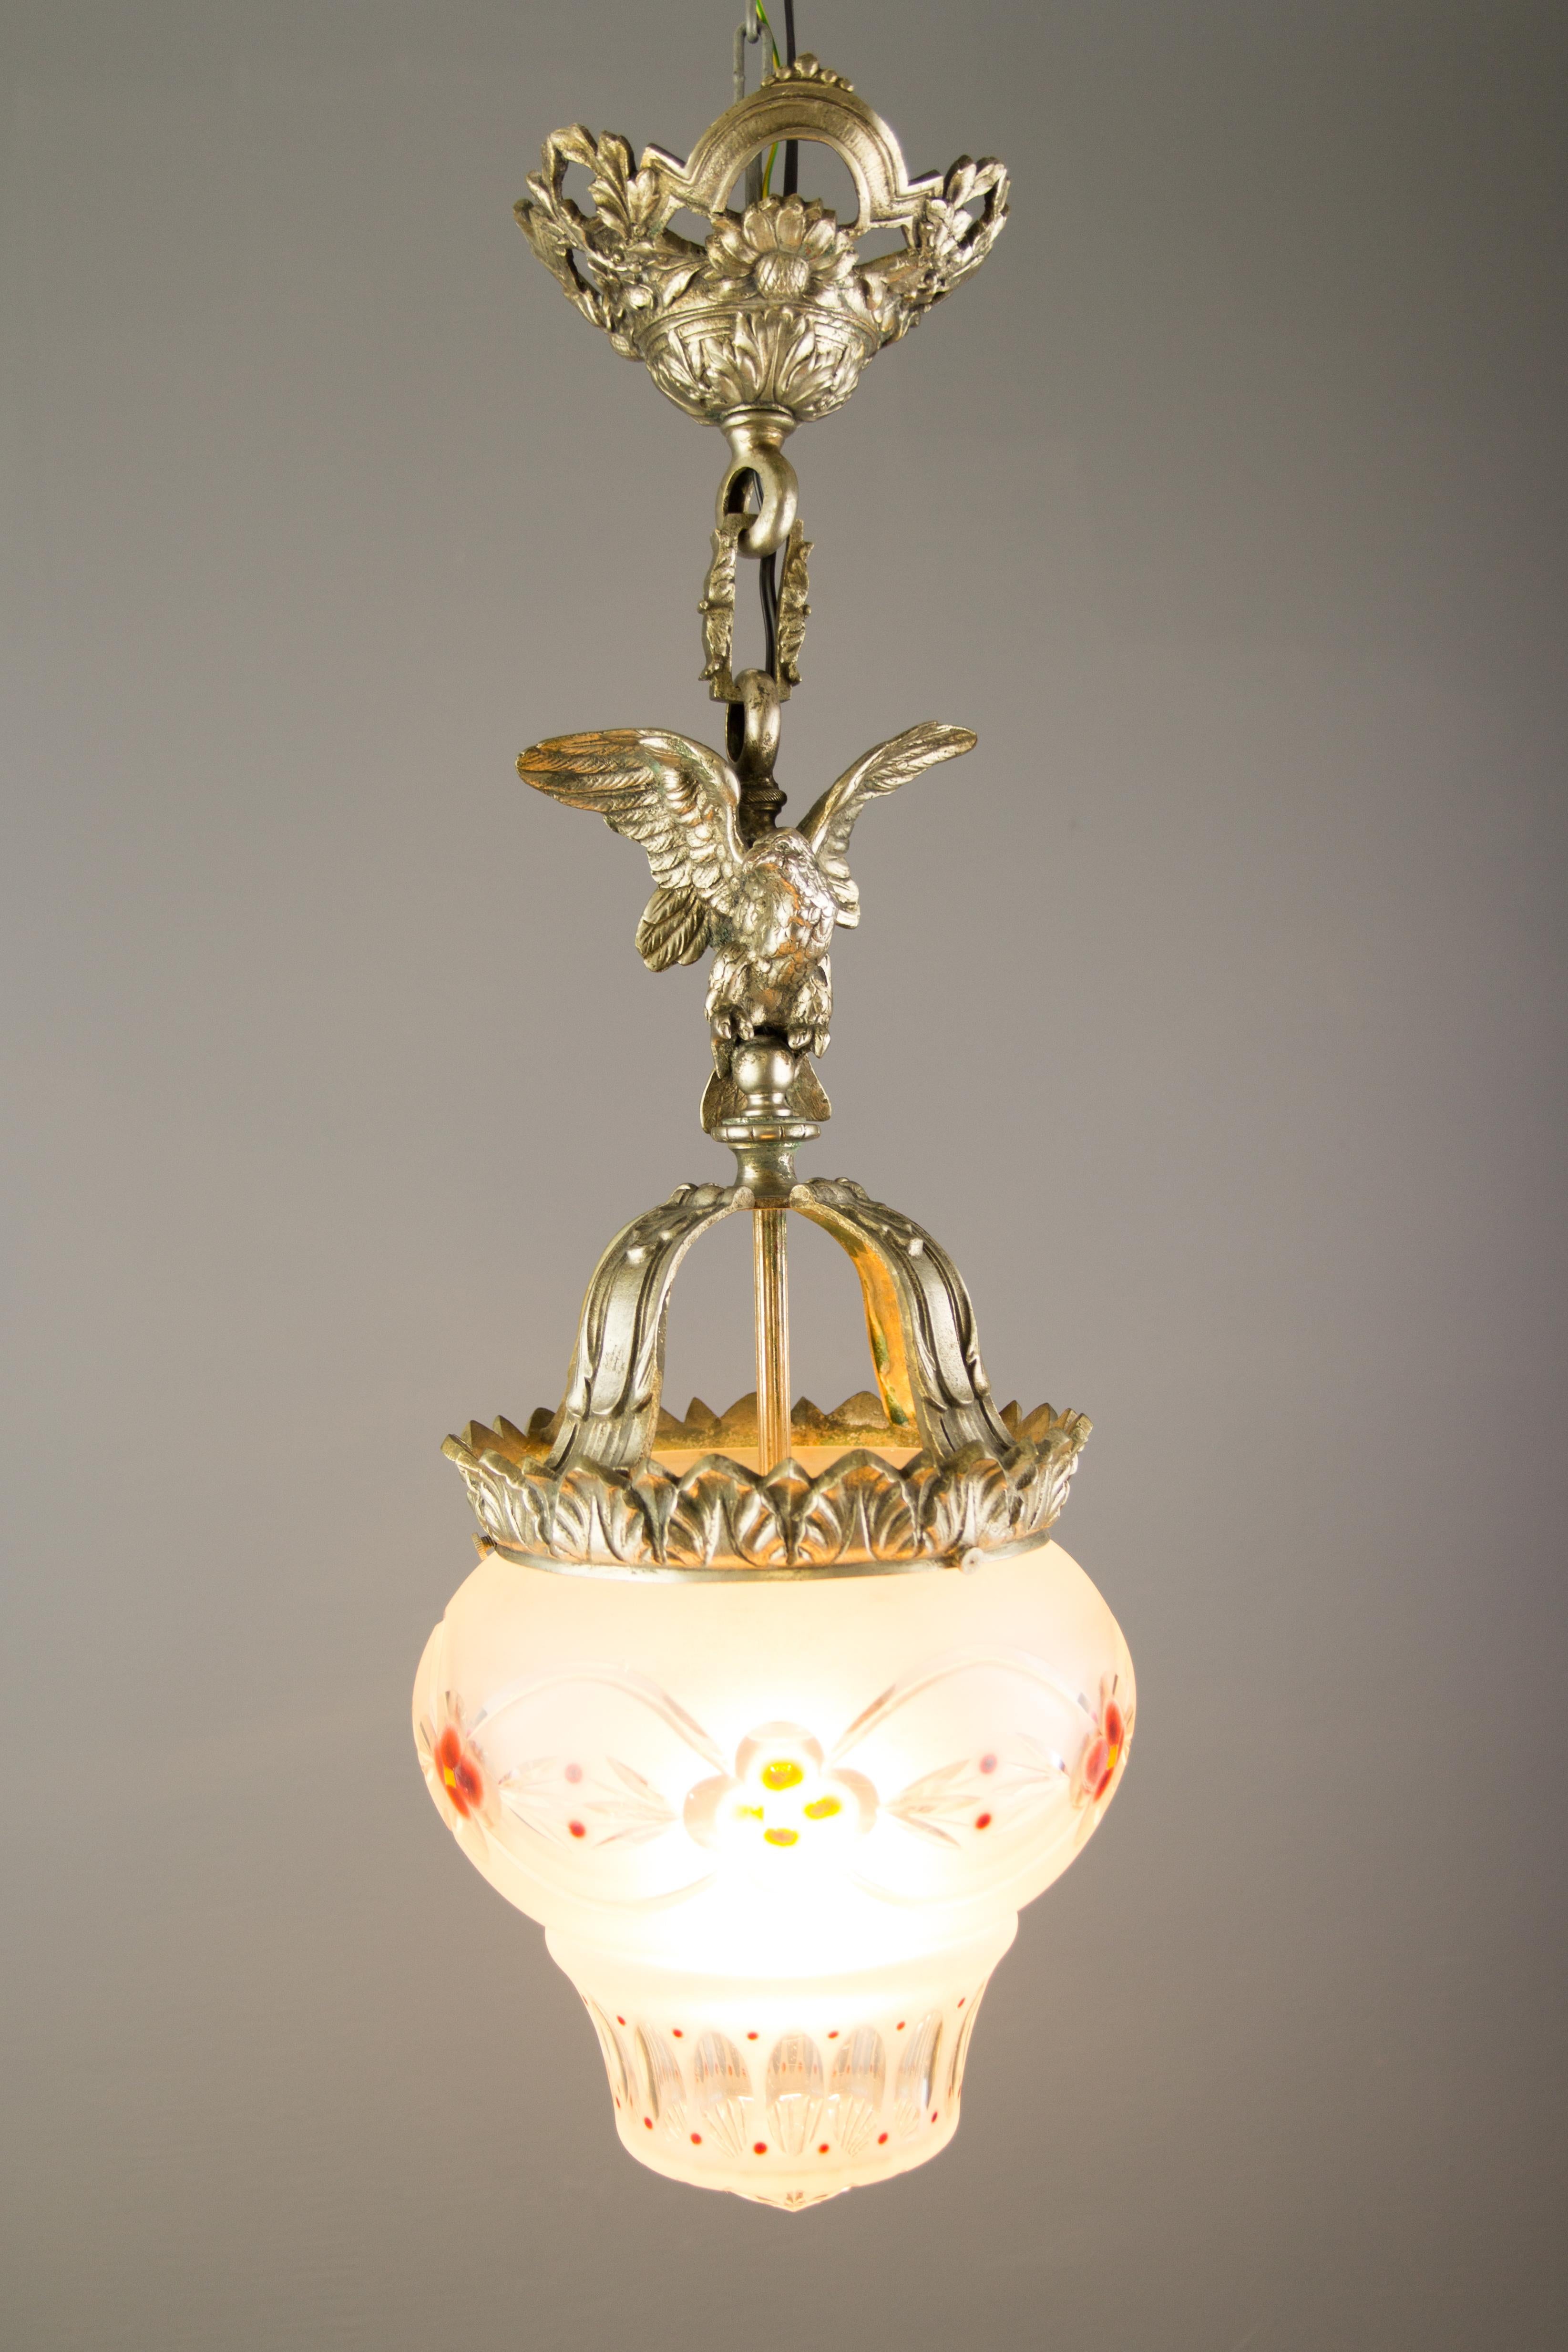 Französische Pendelleuchte aus Bronze und Milchglas mit Adler im neoklassizistischen Stil aus den 1920er Jahren.
Eine dekorative französische Pendelleuchte aus Bronze mit einem Adler mit ausgebreiteten Flügeln über der Bronzekrone. Wunderschön